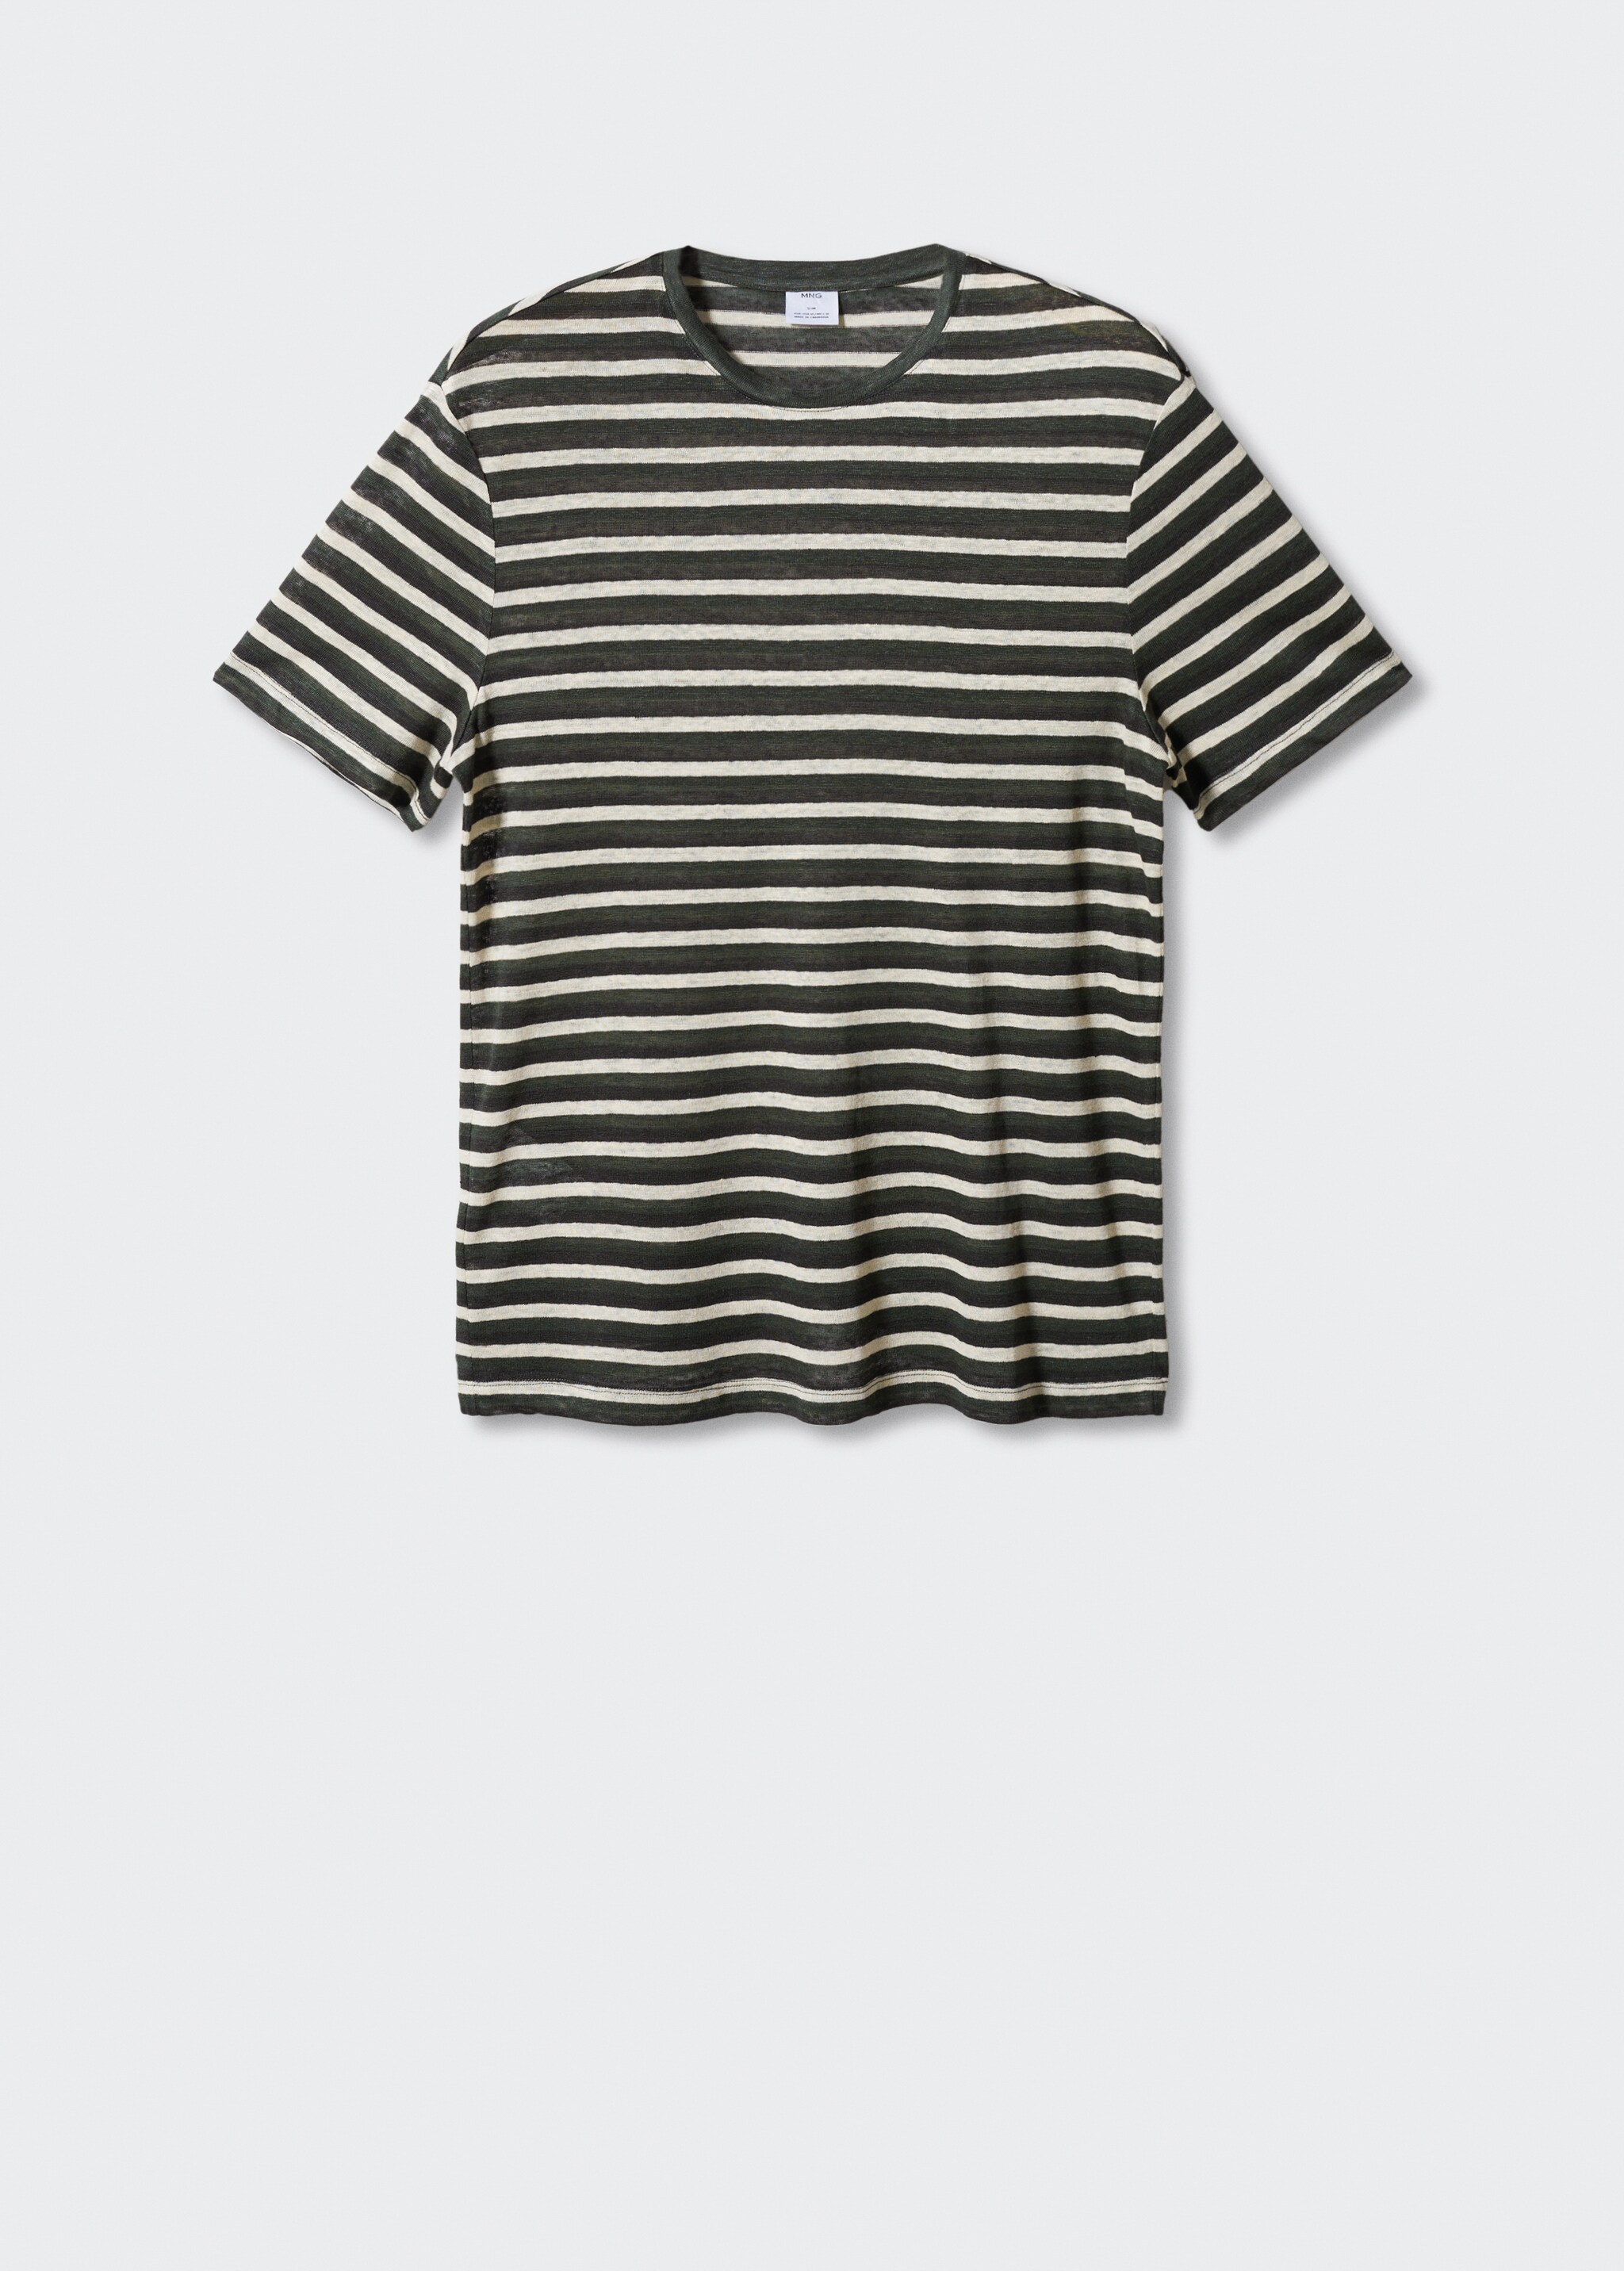 Camiseta 100% lino rayas - Artículo sin modelo